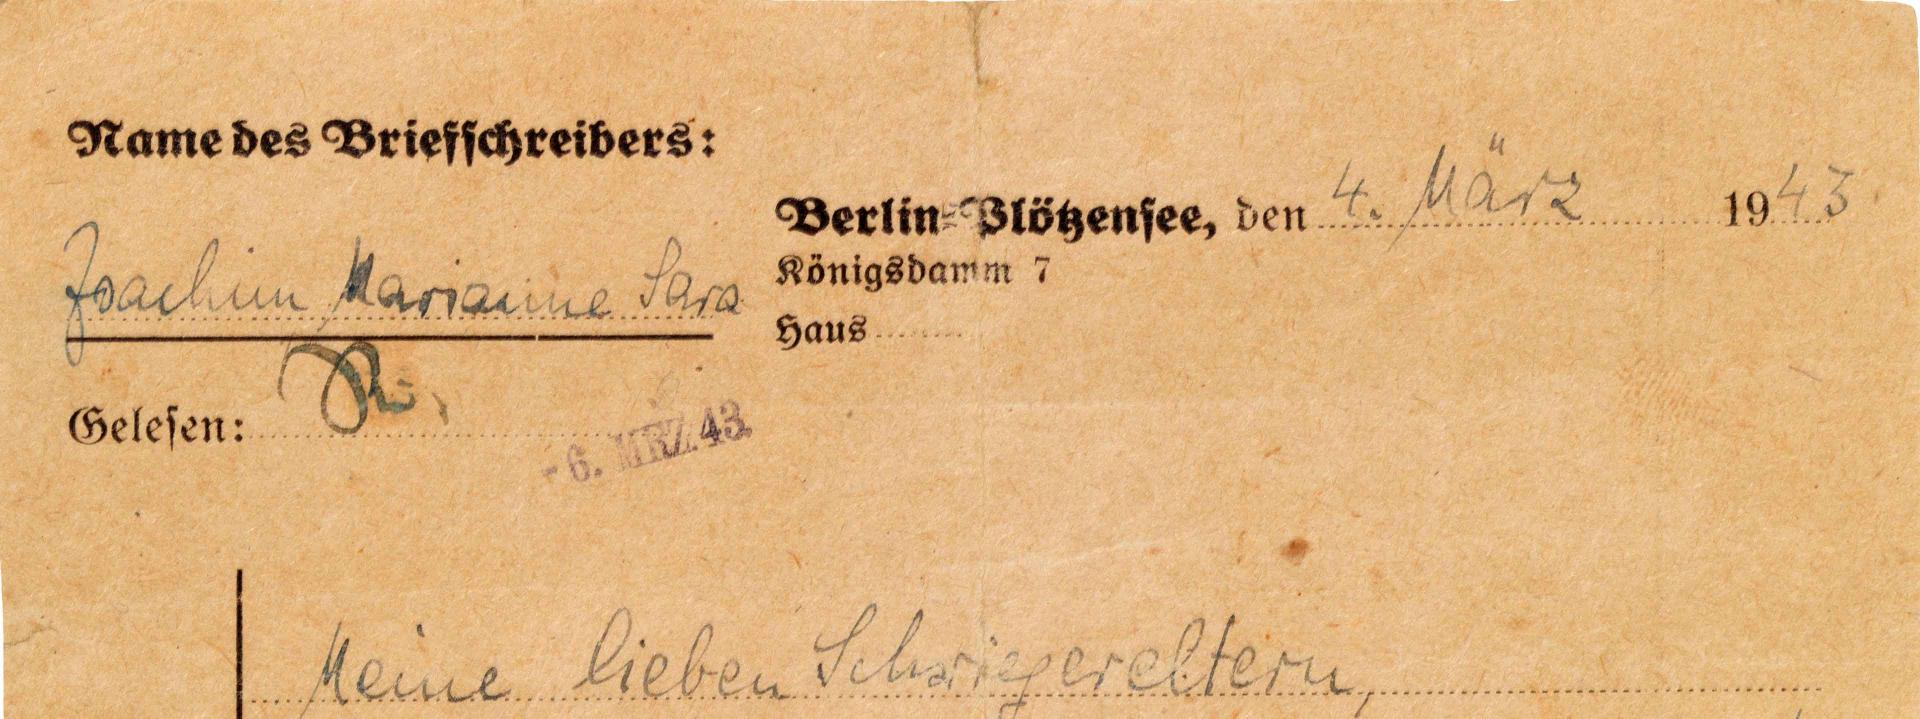 Handschriftlicher Brief auf einem Briefbogen-Vordruck aus Berlin-Plötzensee.